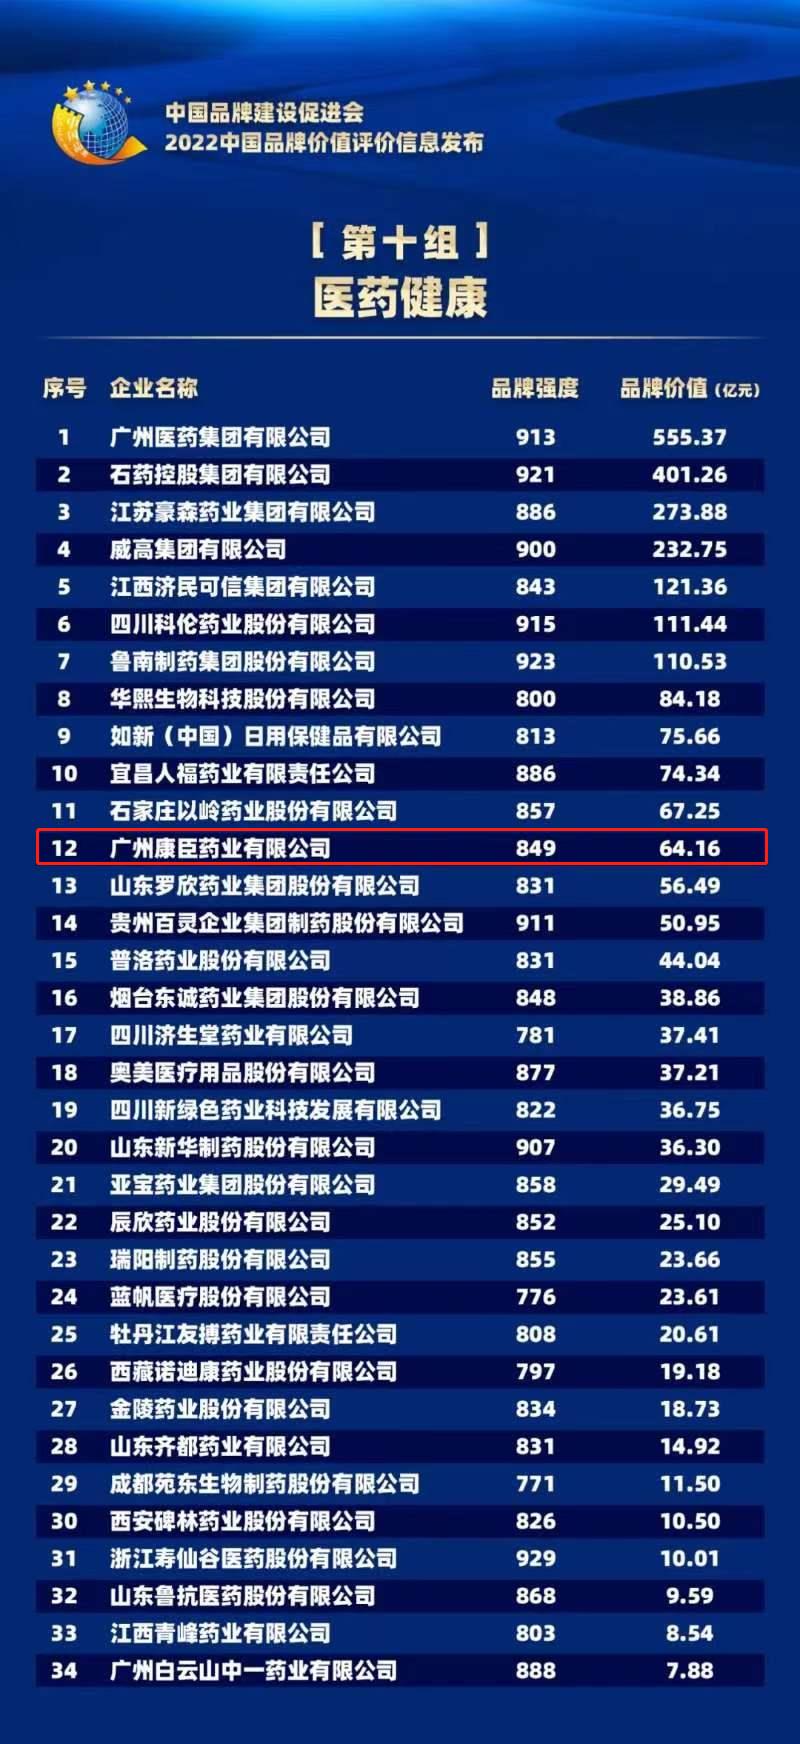 Bwin体育亚洲官网再登“中国品牌价值评价榜单”，品牌价值64.16亿元